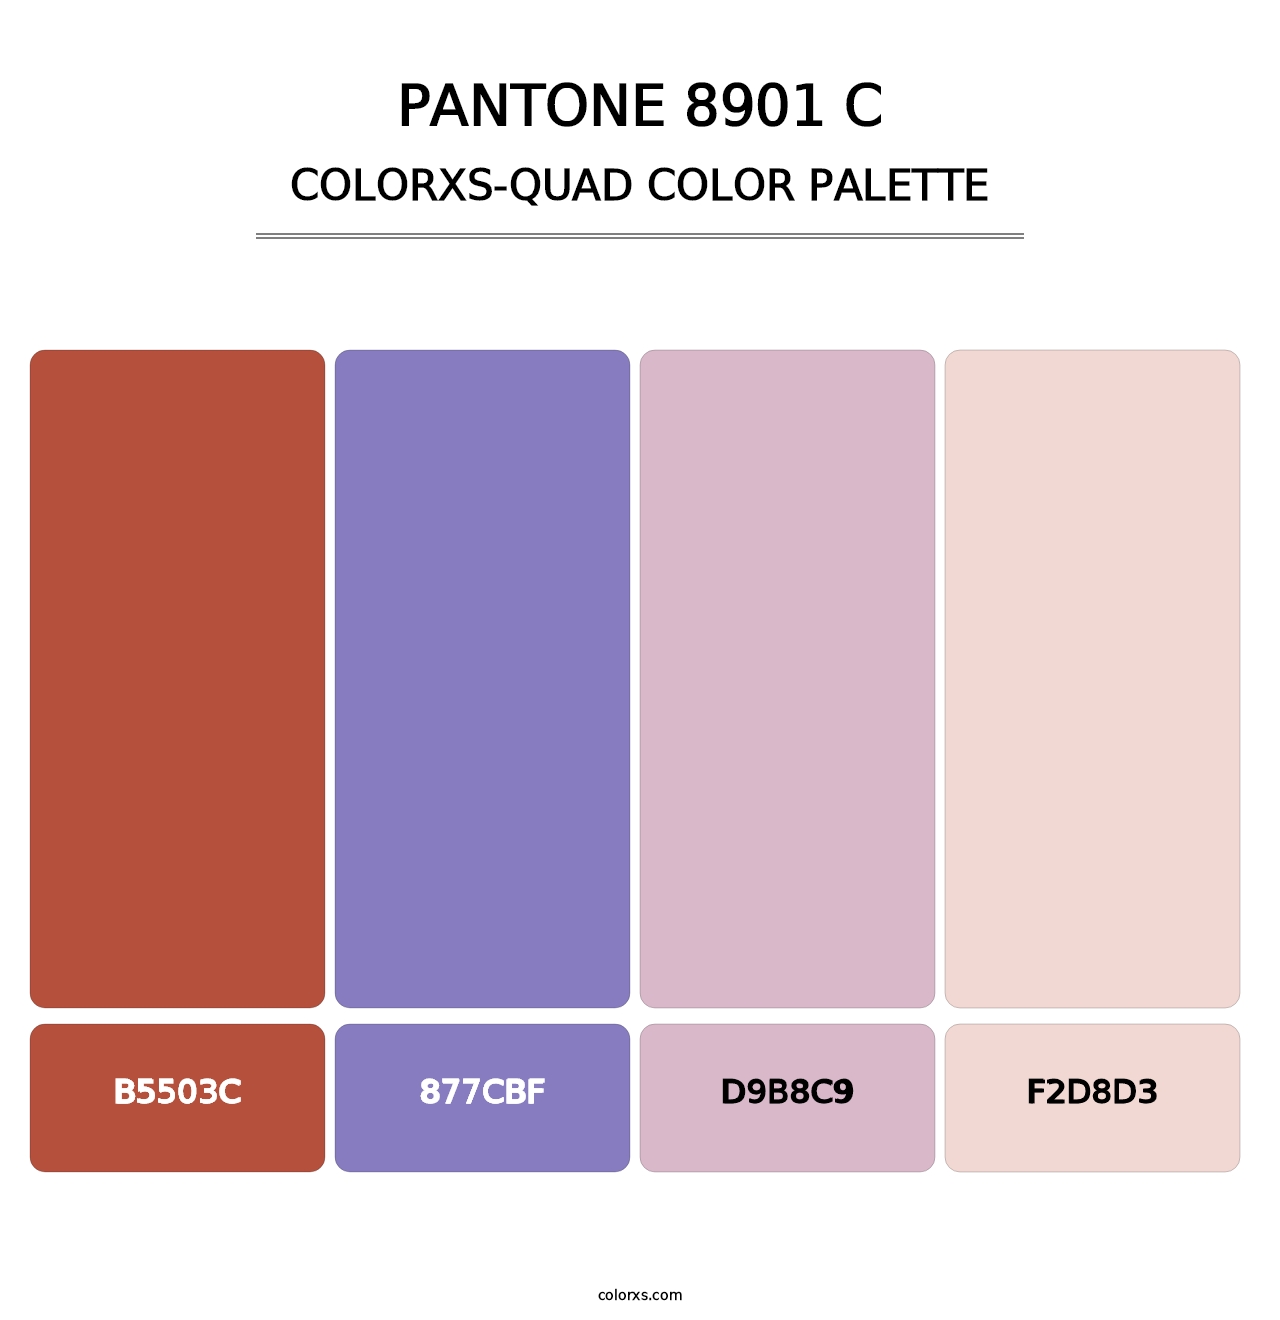 PANTONE 8901 C - Colorxs Quad Palette